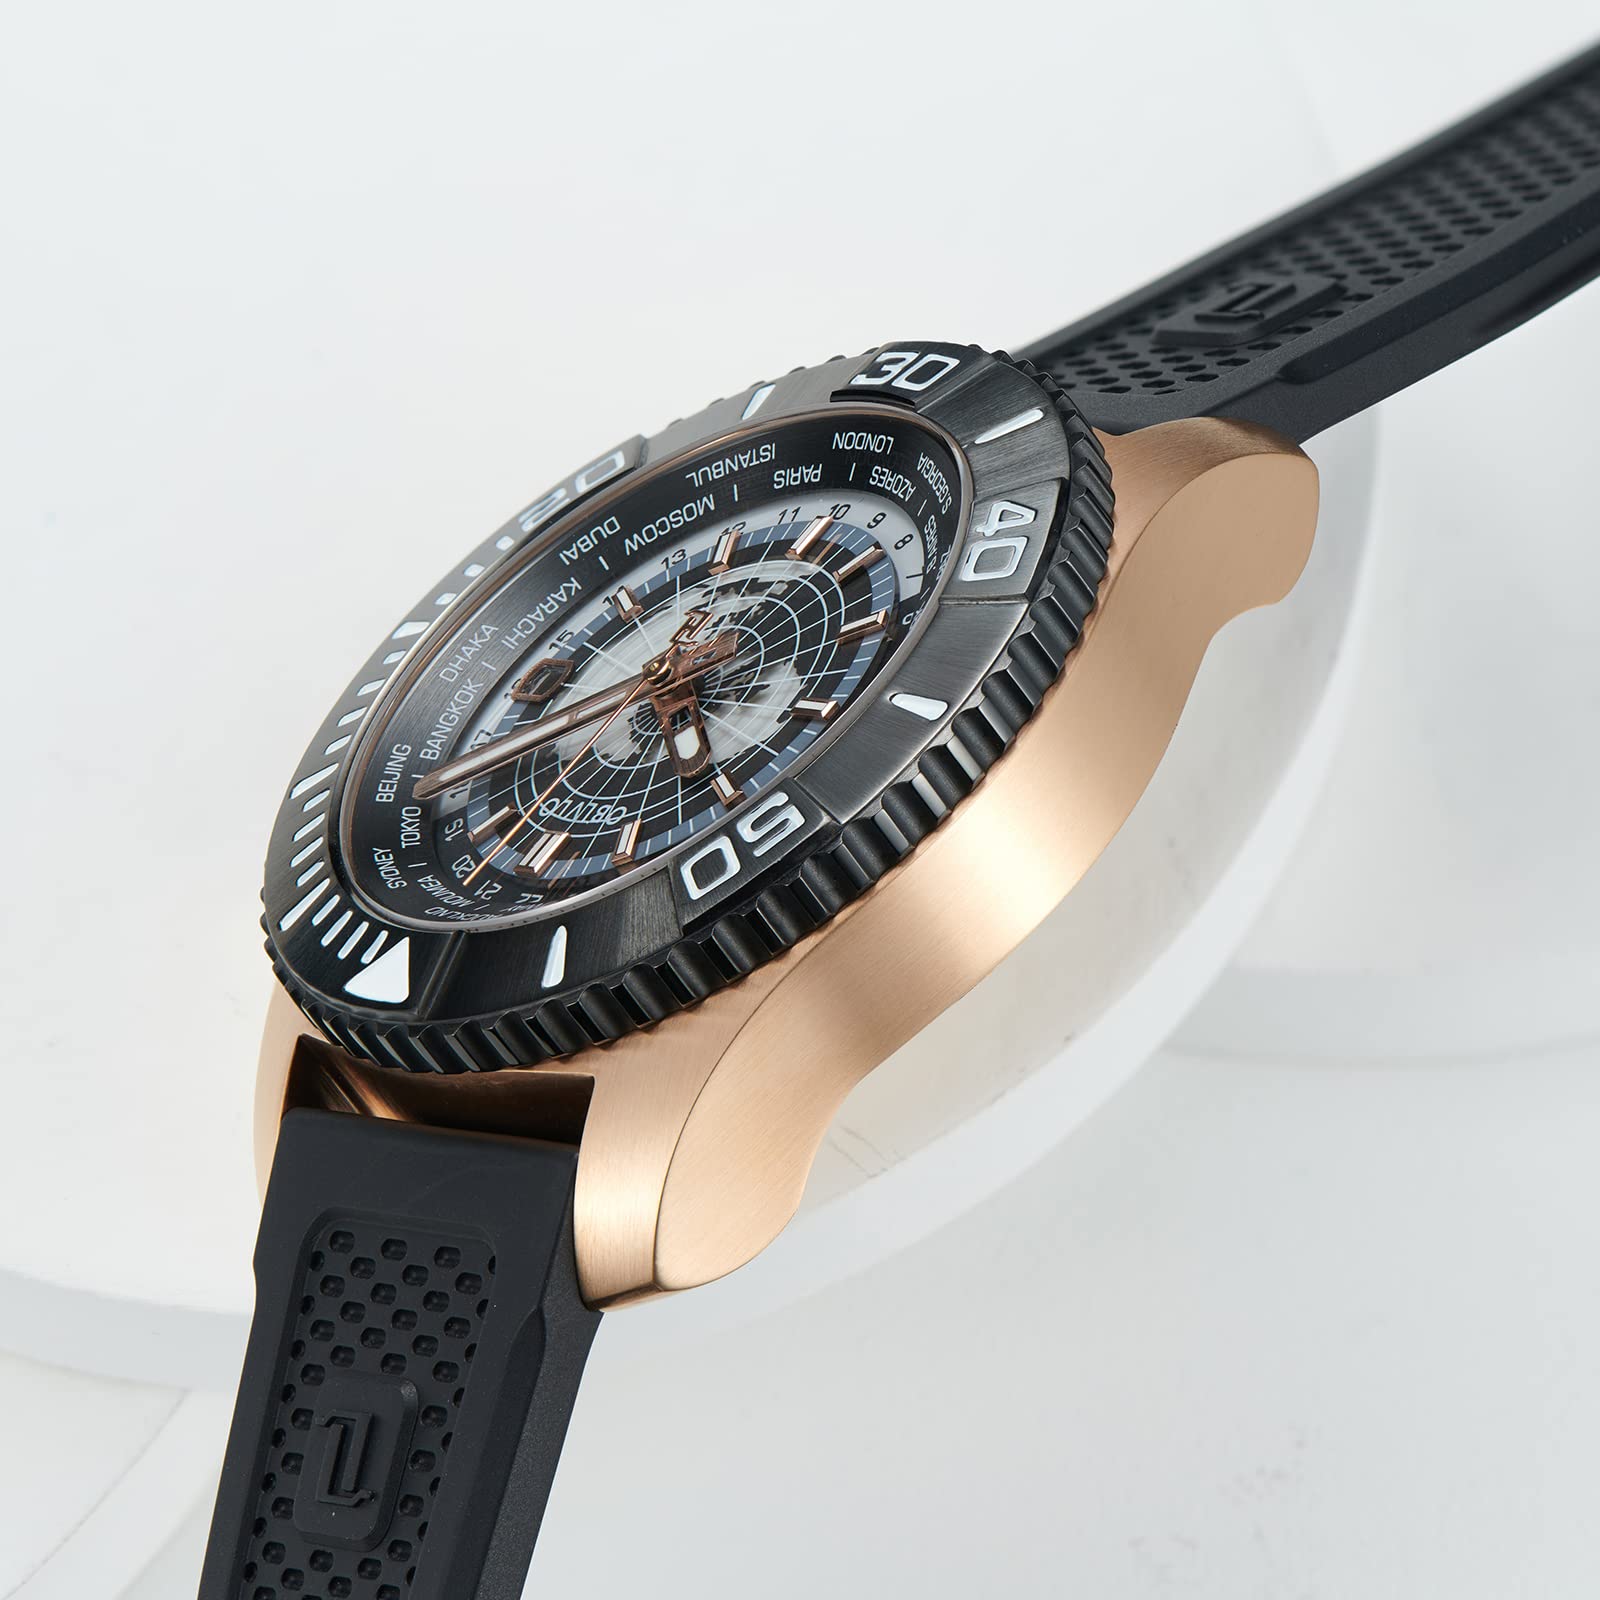 OBLVLO Luxusmarke World Time Military Automatische Mechanische Uhr für Herren Leder Wasserdicht Super Luminous Herrenuhren BM